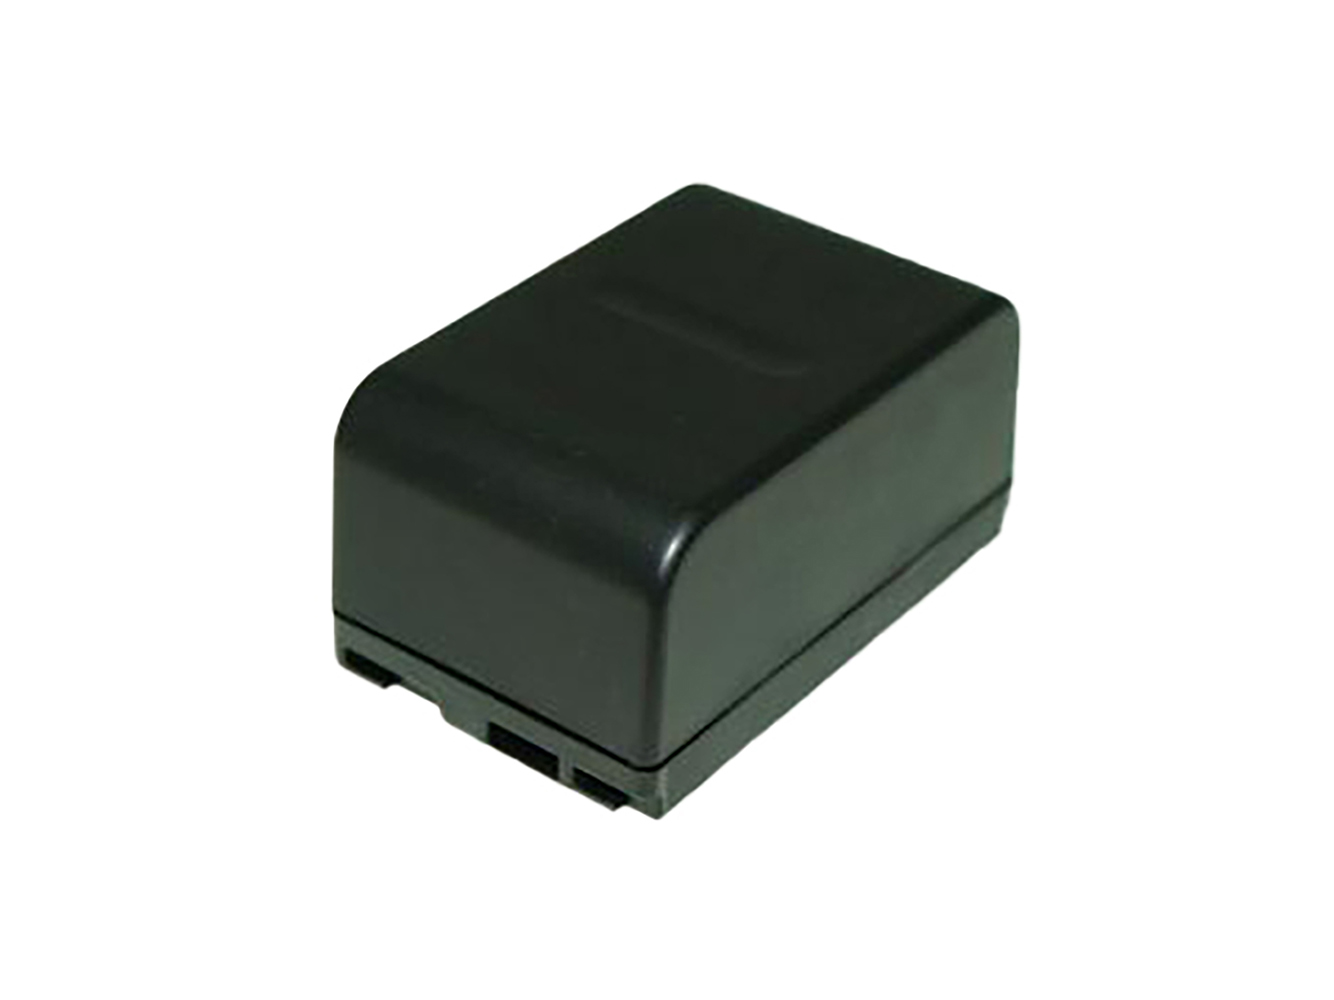 Kompatibler Ersatz für PANASONIC NV-ALEN, NV-CSLEN, NV-RXTEN, NV-X100, PANASONIC NV-A, NV-R, NV-RX, NV-S, NV-V Serien Camcorder Akku